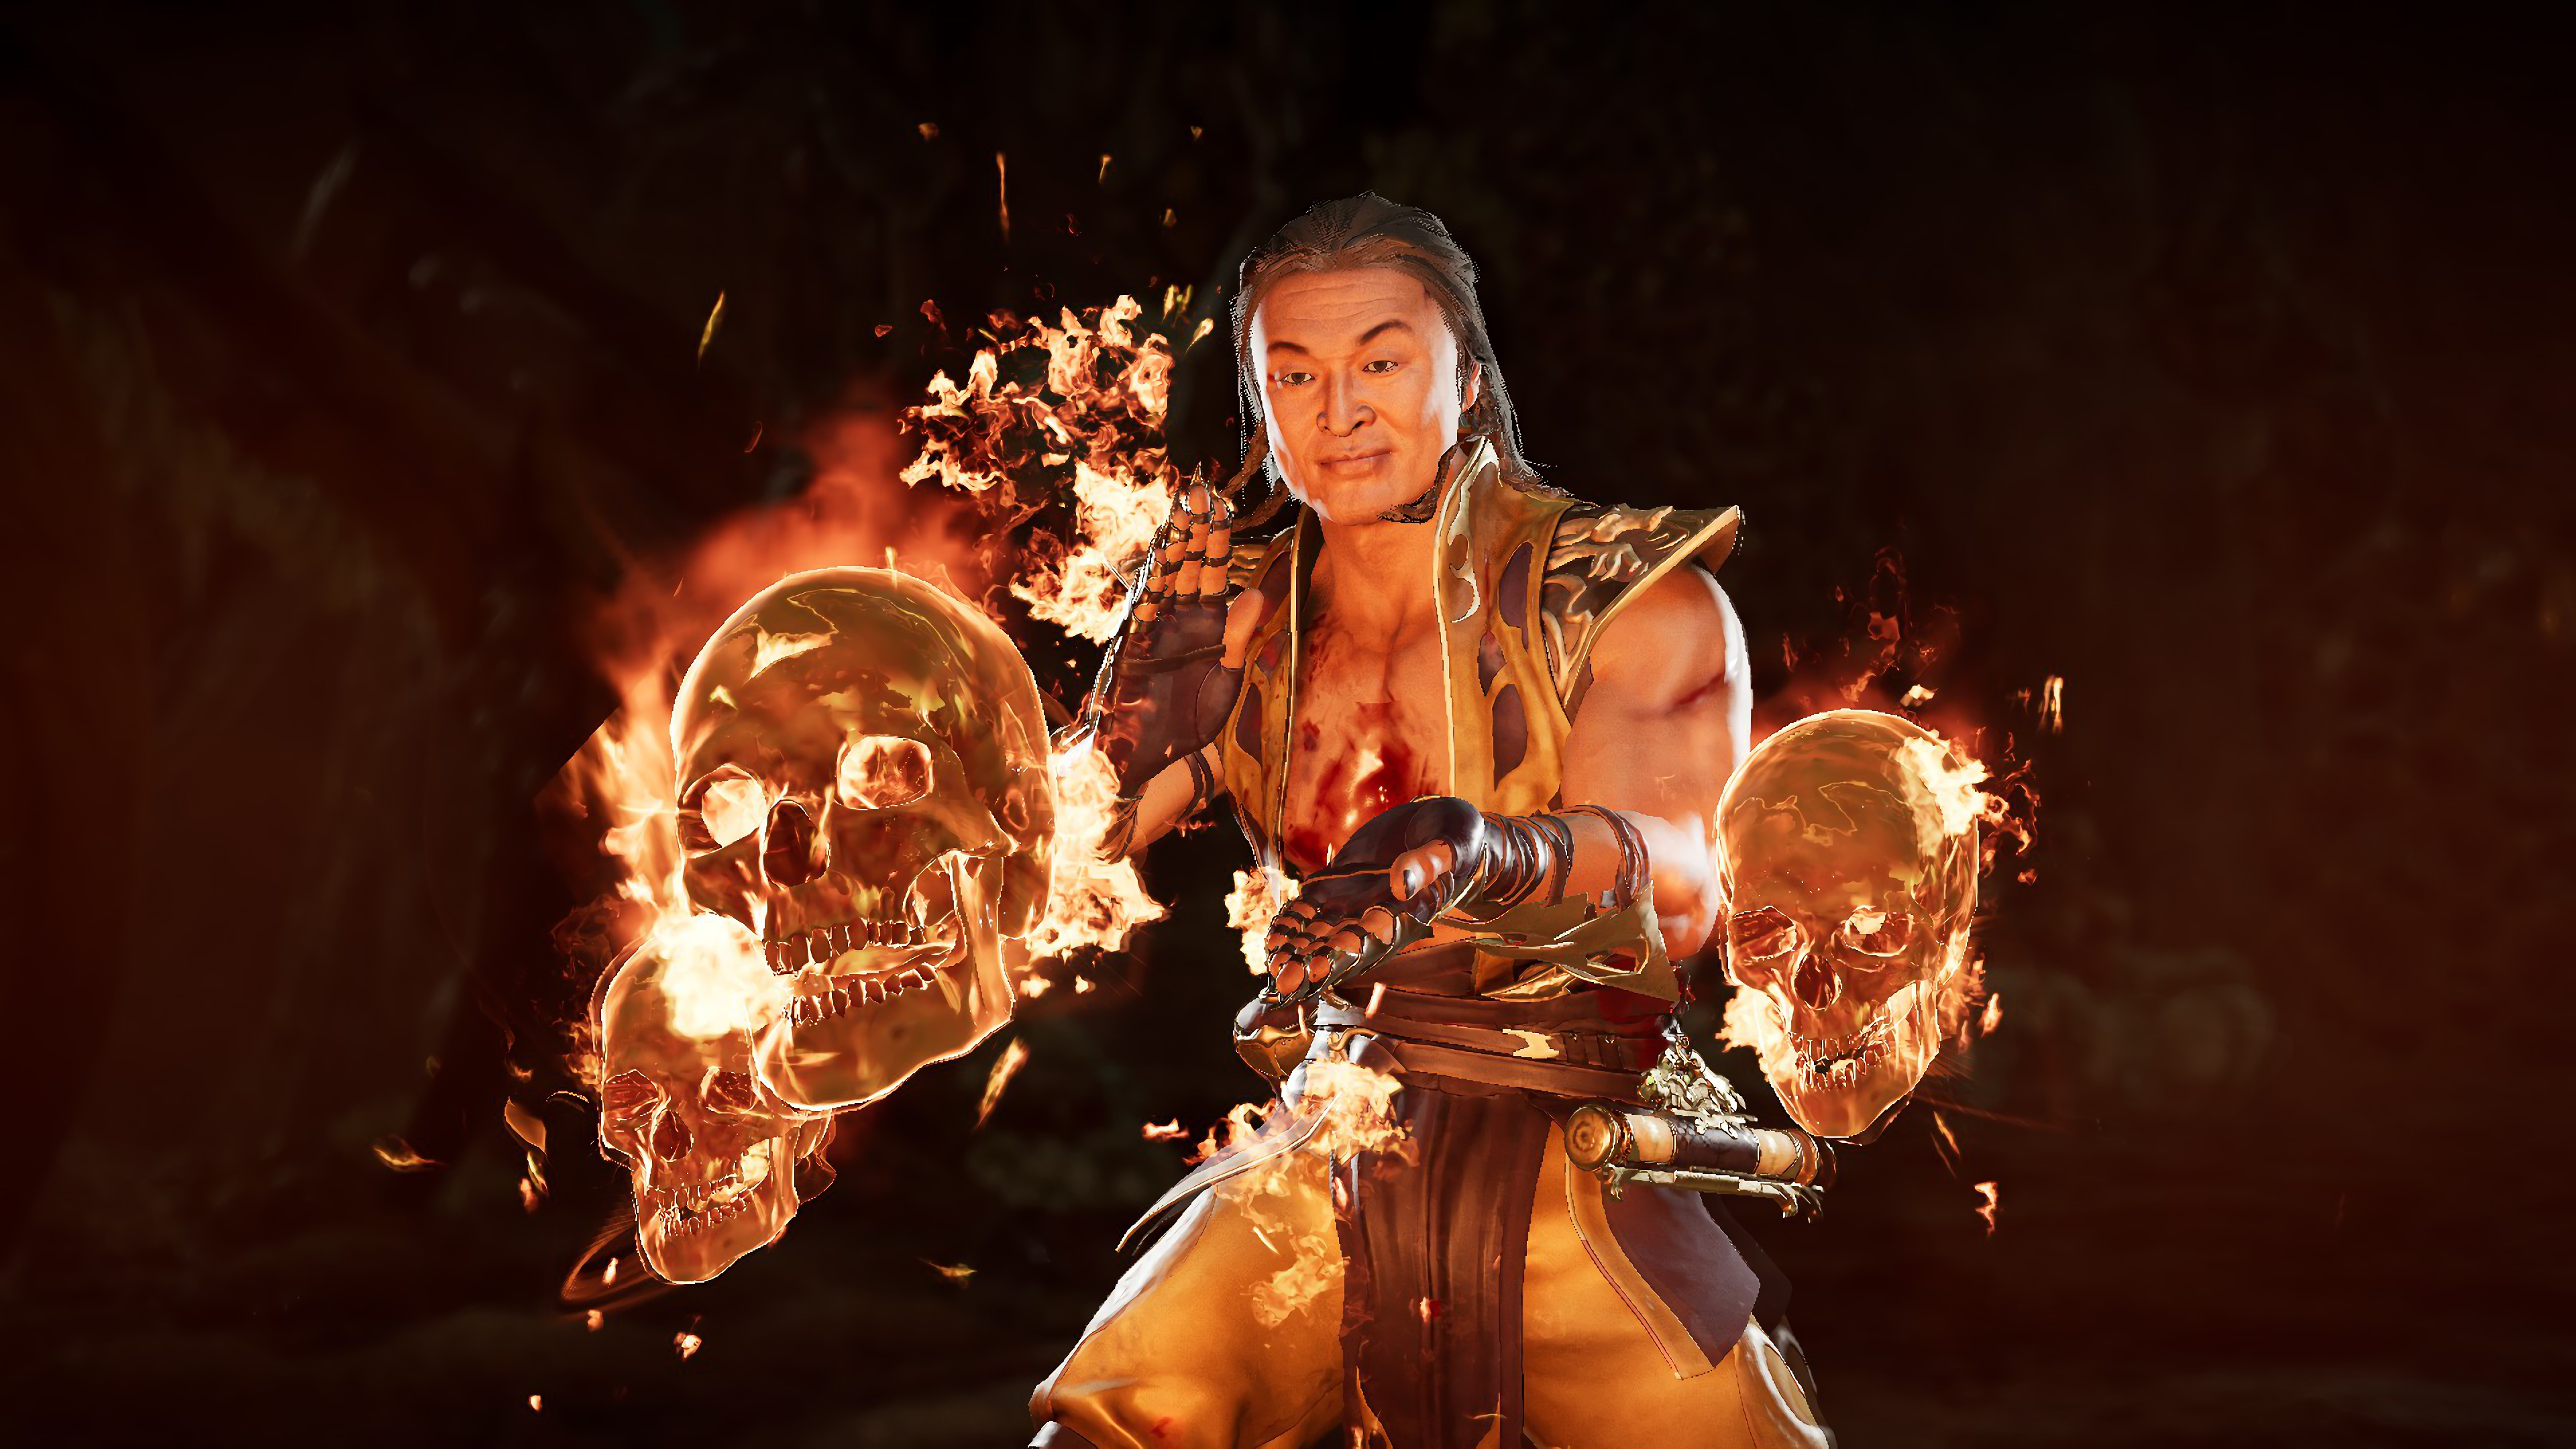 Burning skull, Shang Tsung's power, Mortal Kombat 11, Sinister aura, 3840x2160 4K Desktop